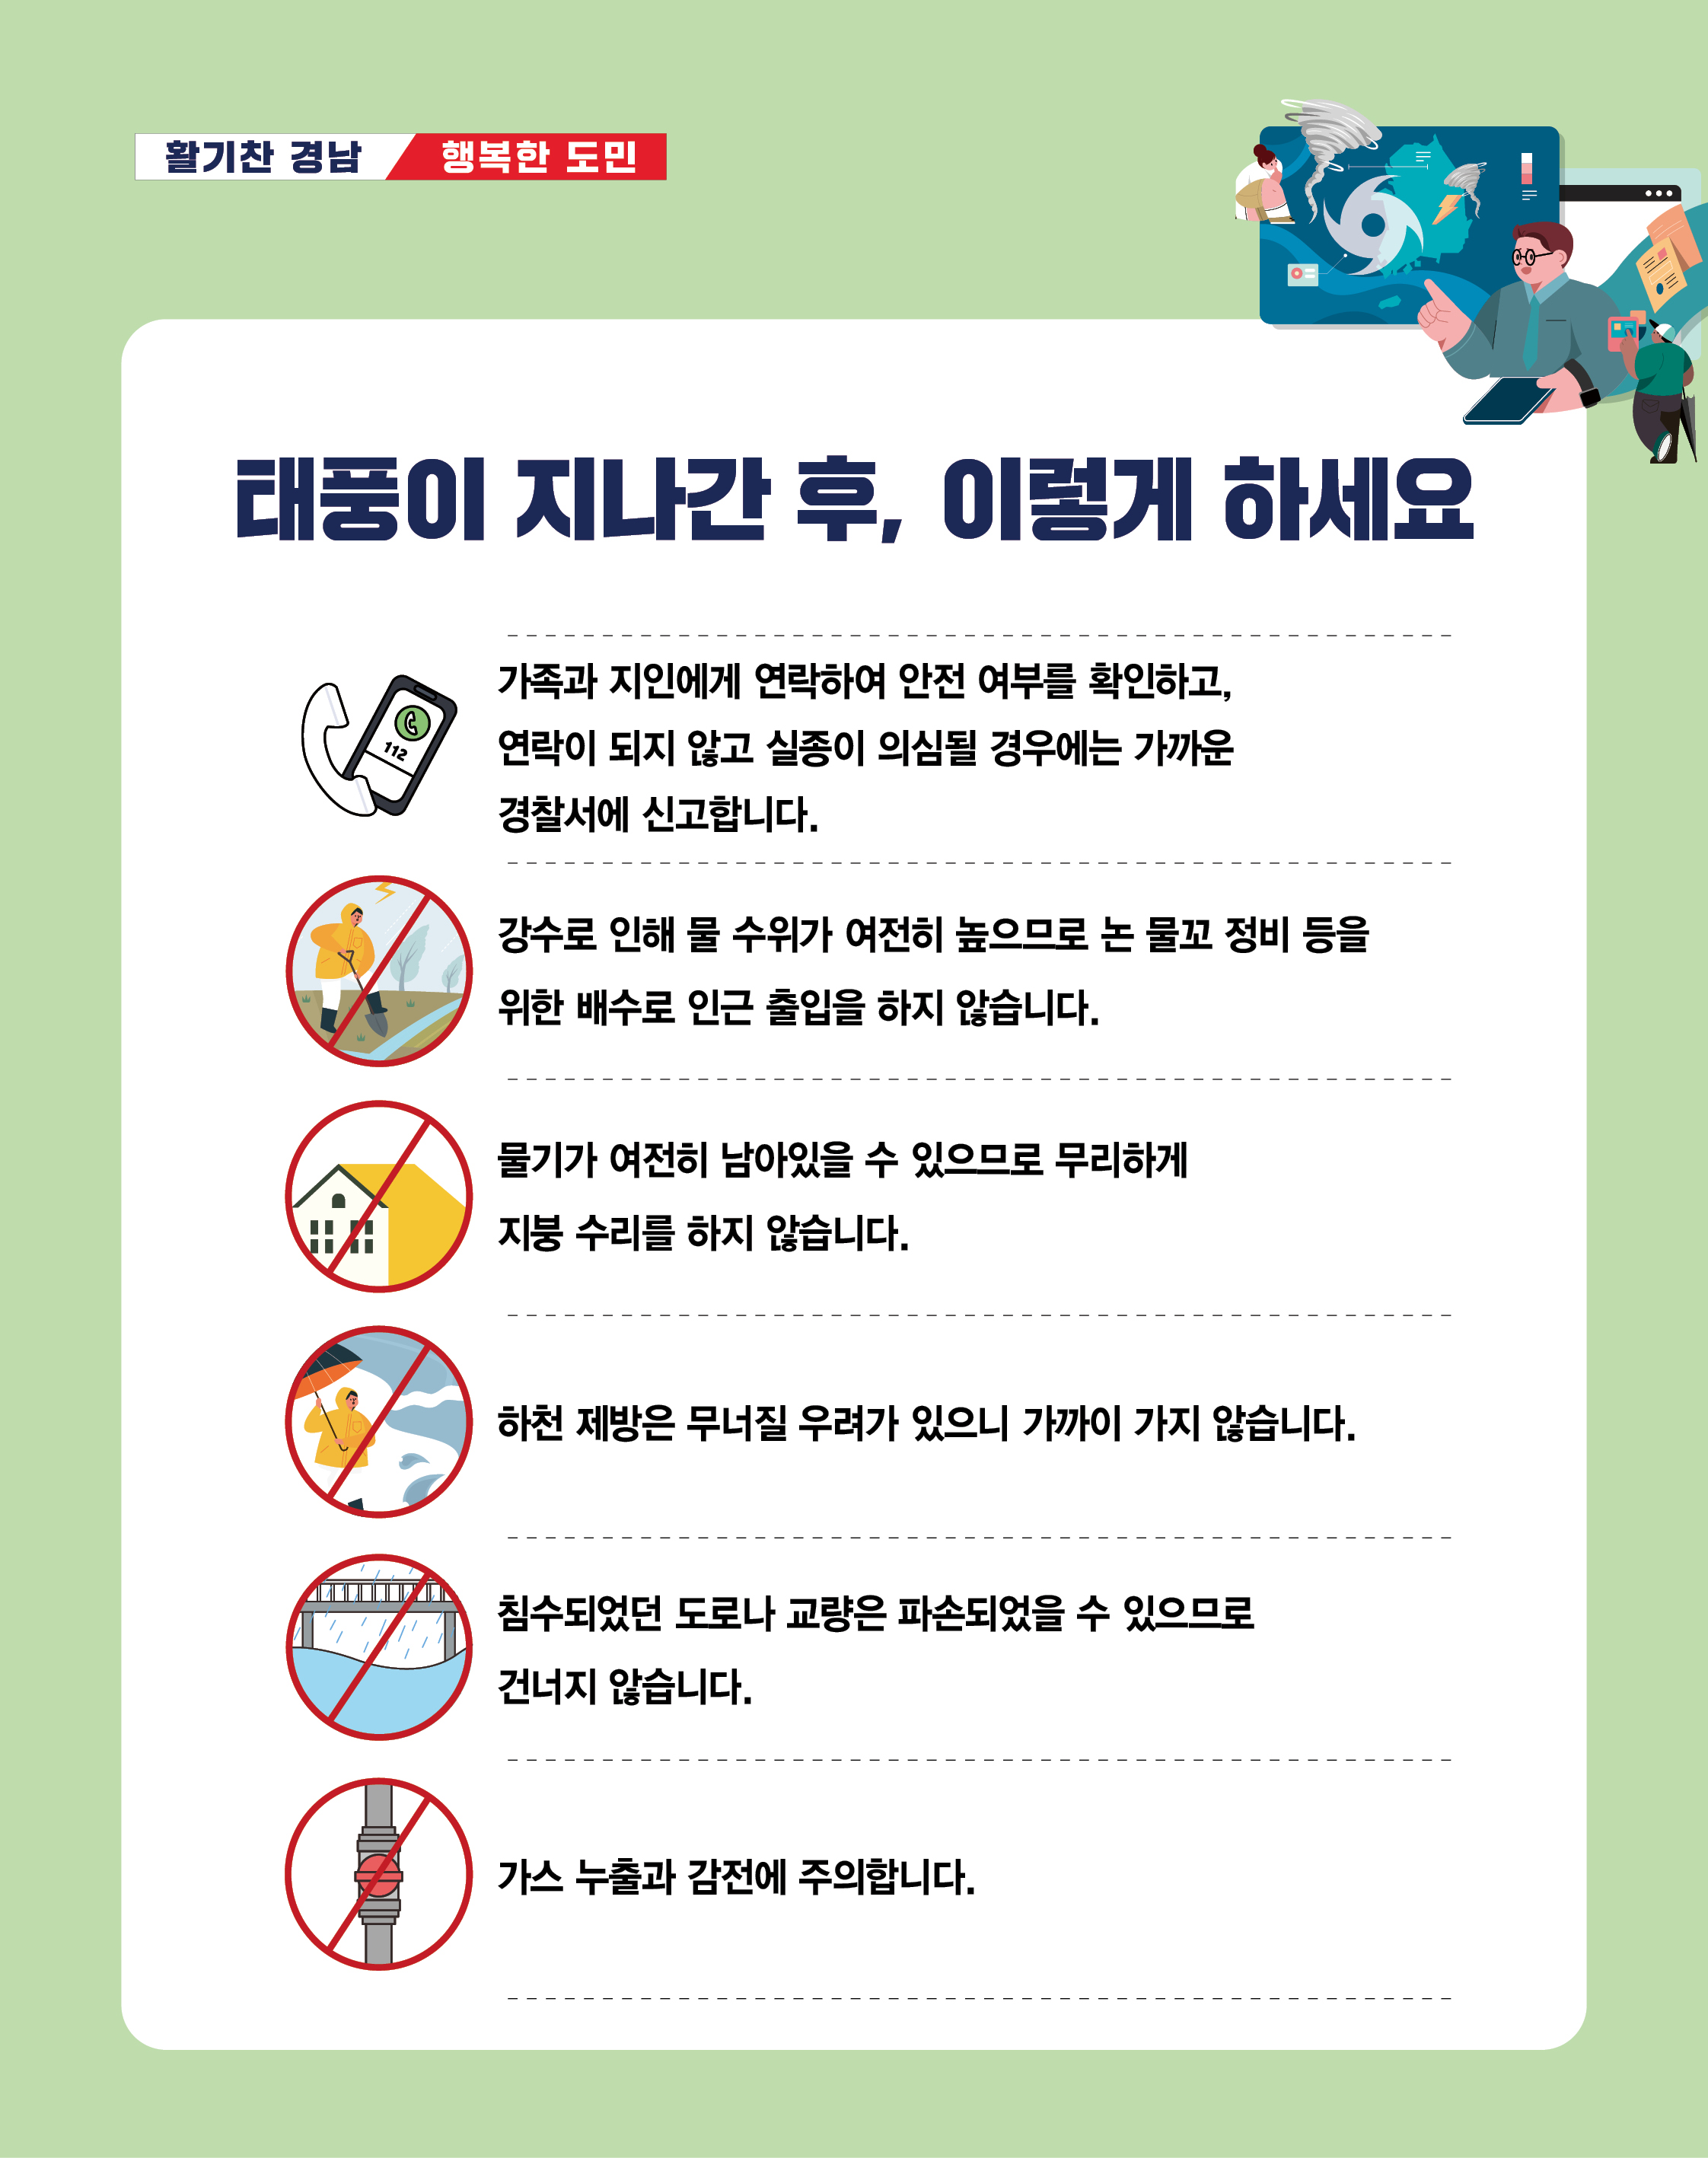 도청자연재난과태풍대비행동요령카드뉴스(d+1).jpg